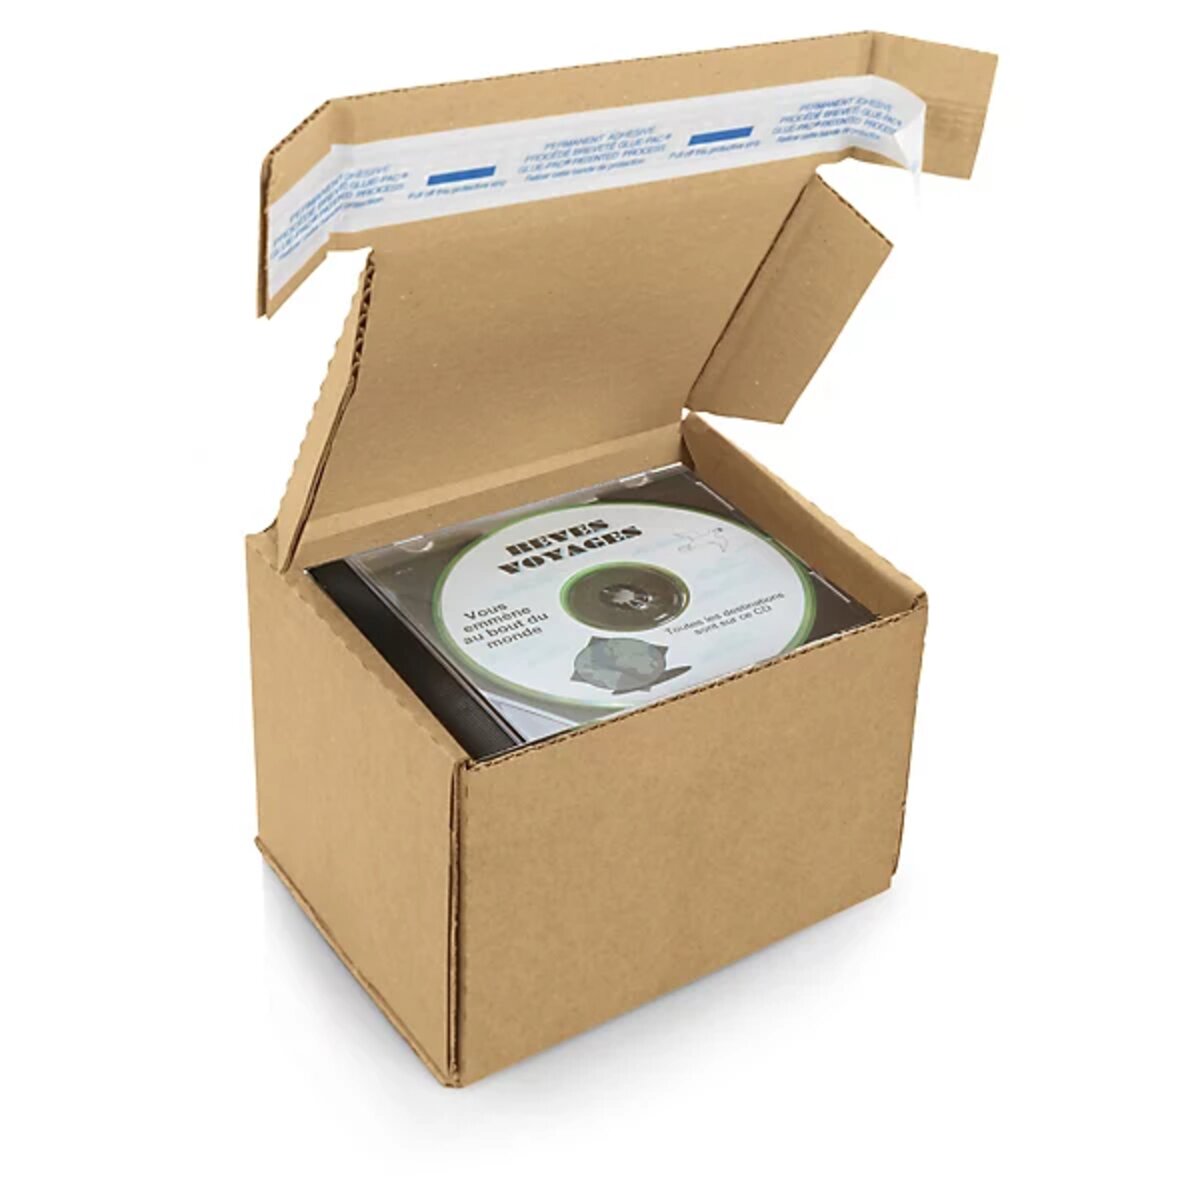 Boîte carton brune avec fermeture adhésive ecologique et eco-responsable